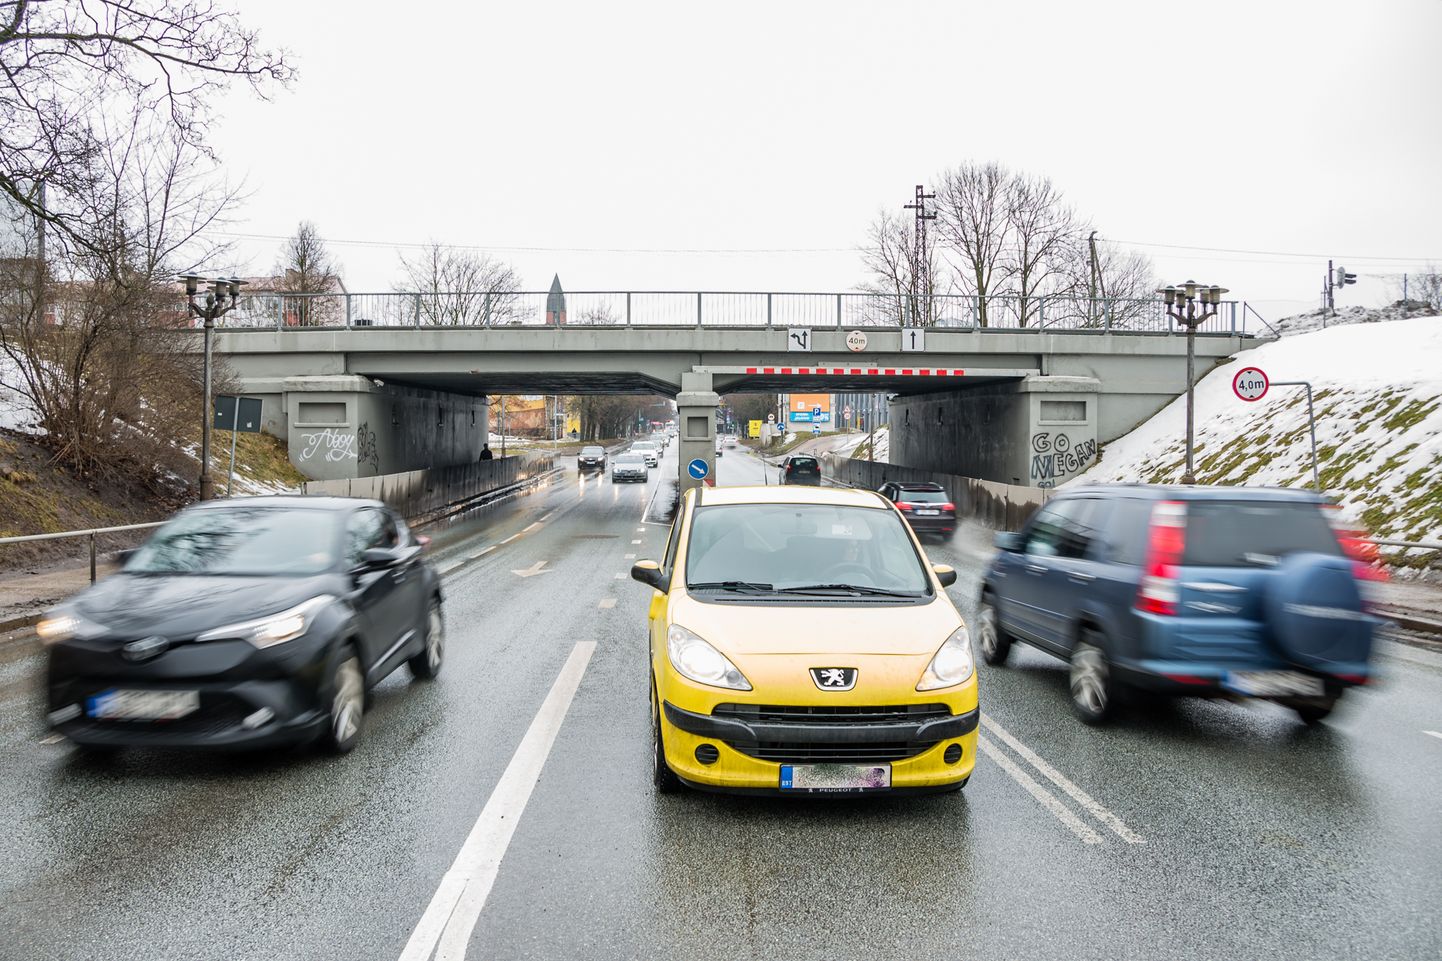 Nüüd on selge, et Riia tänava raudteeviadukti all poolt rehkendust teha ei saa ja see tähendab, et kondimootori jõul liikujatele on tarvis ehitada tunnel mõlemale poole viadukti.